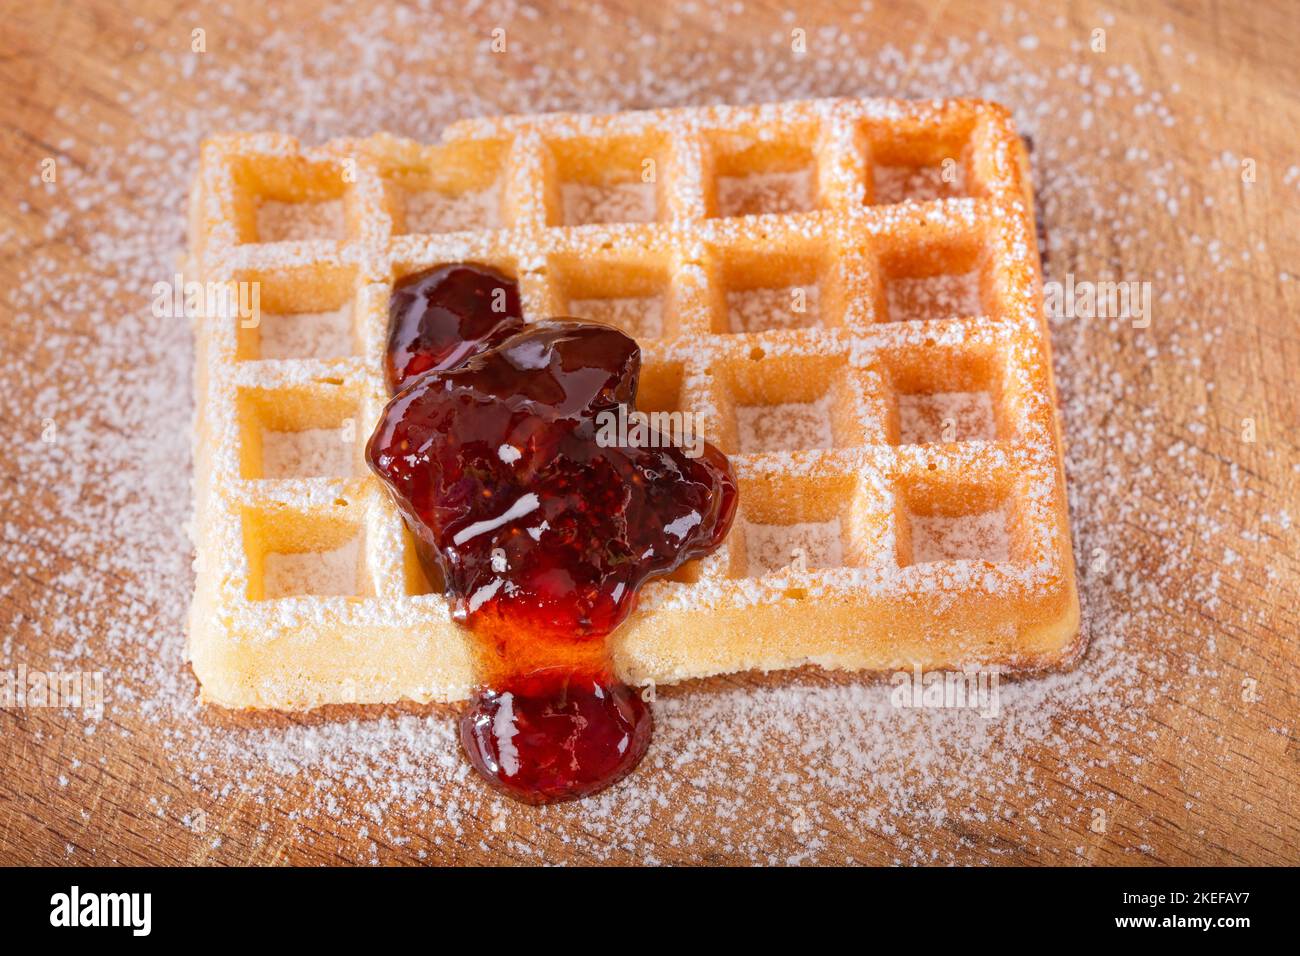 Delicioso waffle belga casero con mermelada de fresas y azúcar en polvo en la mesa - vista superior Foto de stock